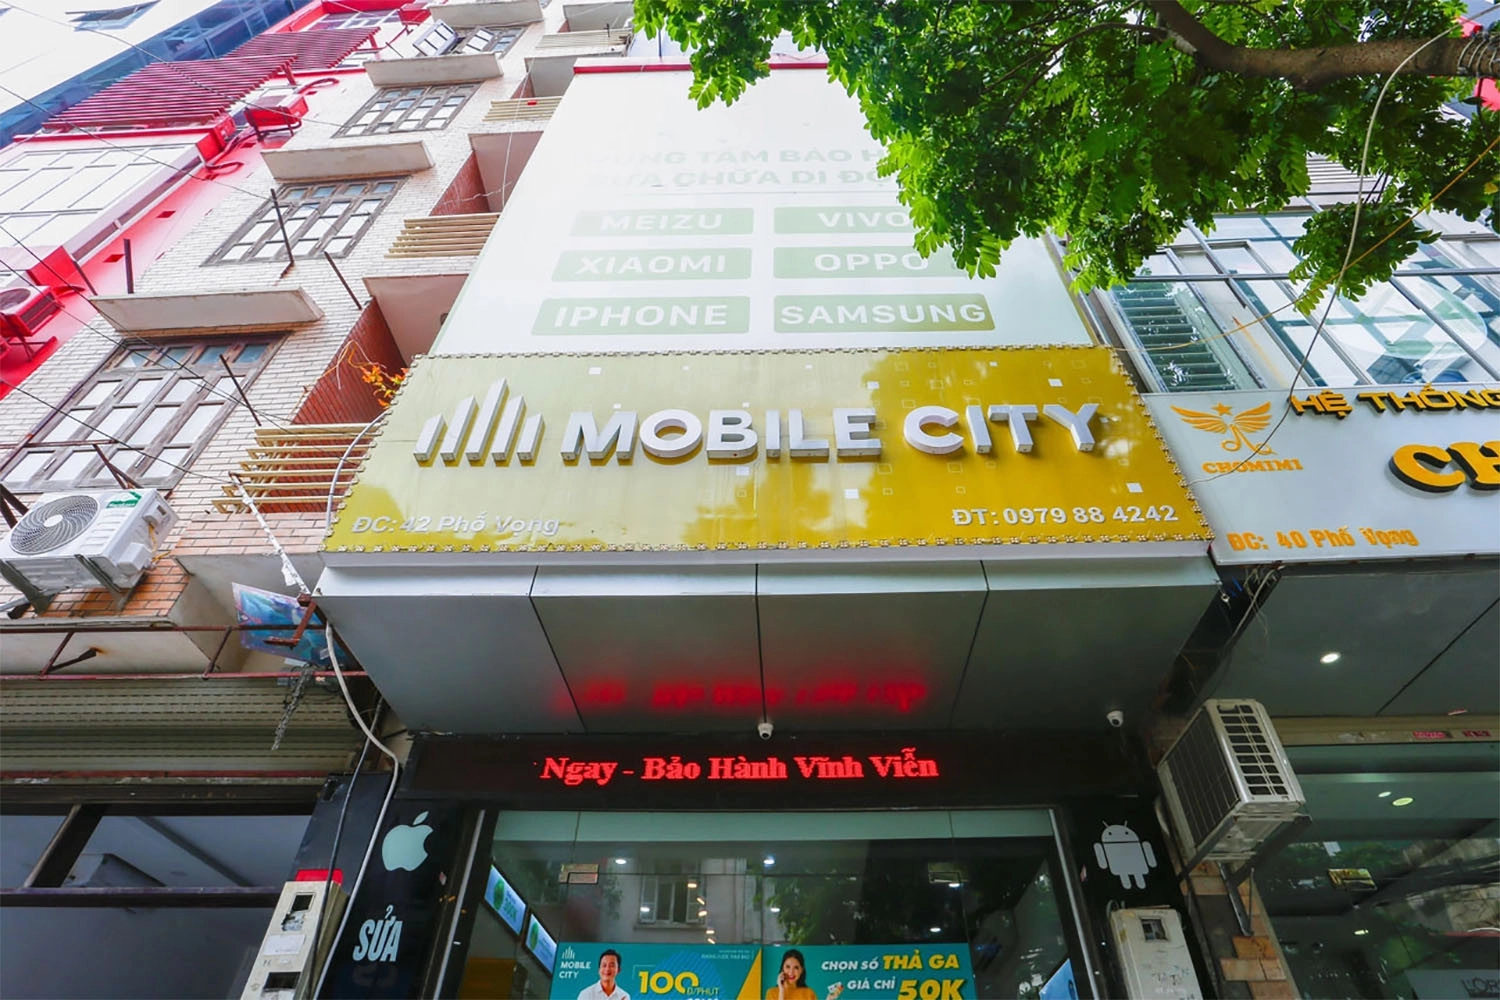 Thay Pin iPhone XS, Địa chỉ thay Pin iPhone XS tại Hà Nội, Đà Nẵng, Tp.HCM